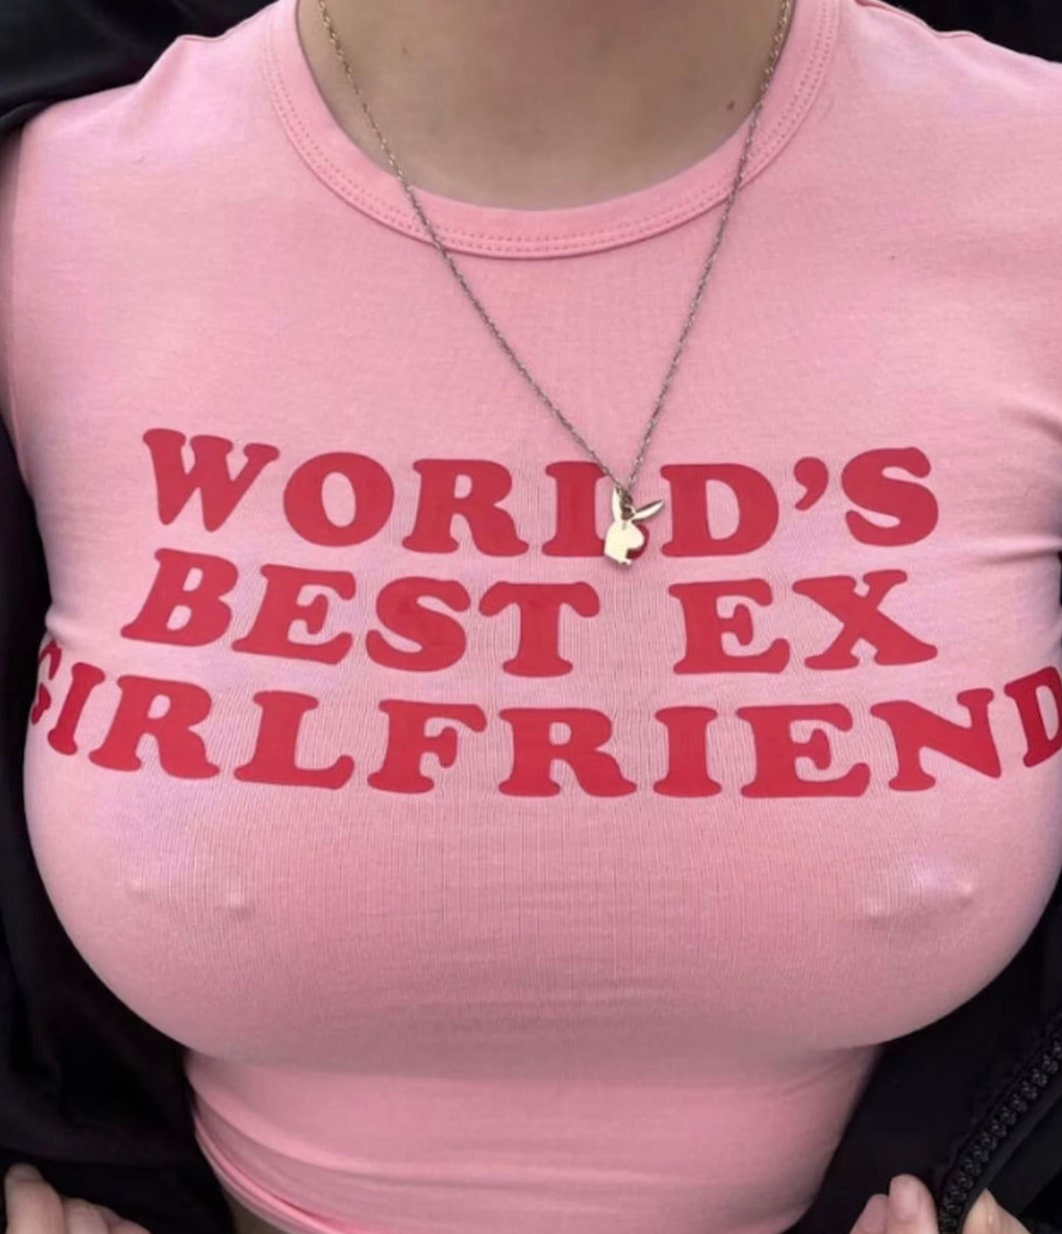 black ex girlfriend in pink hoodi